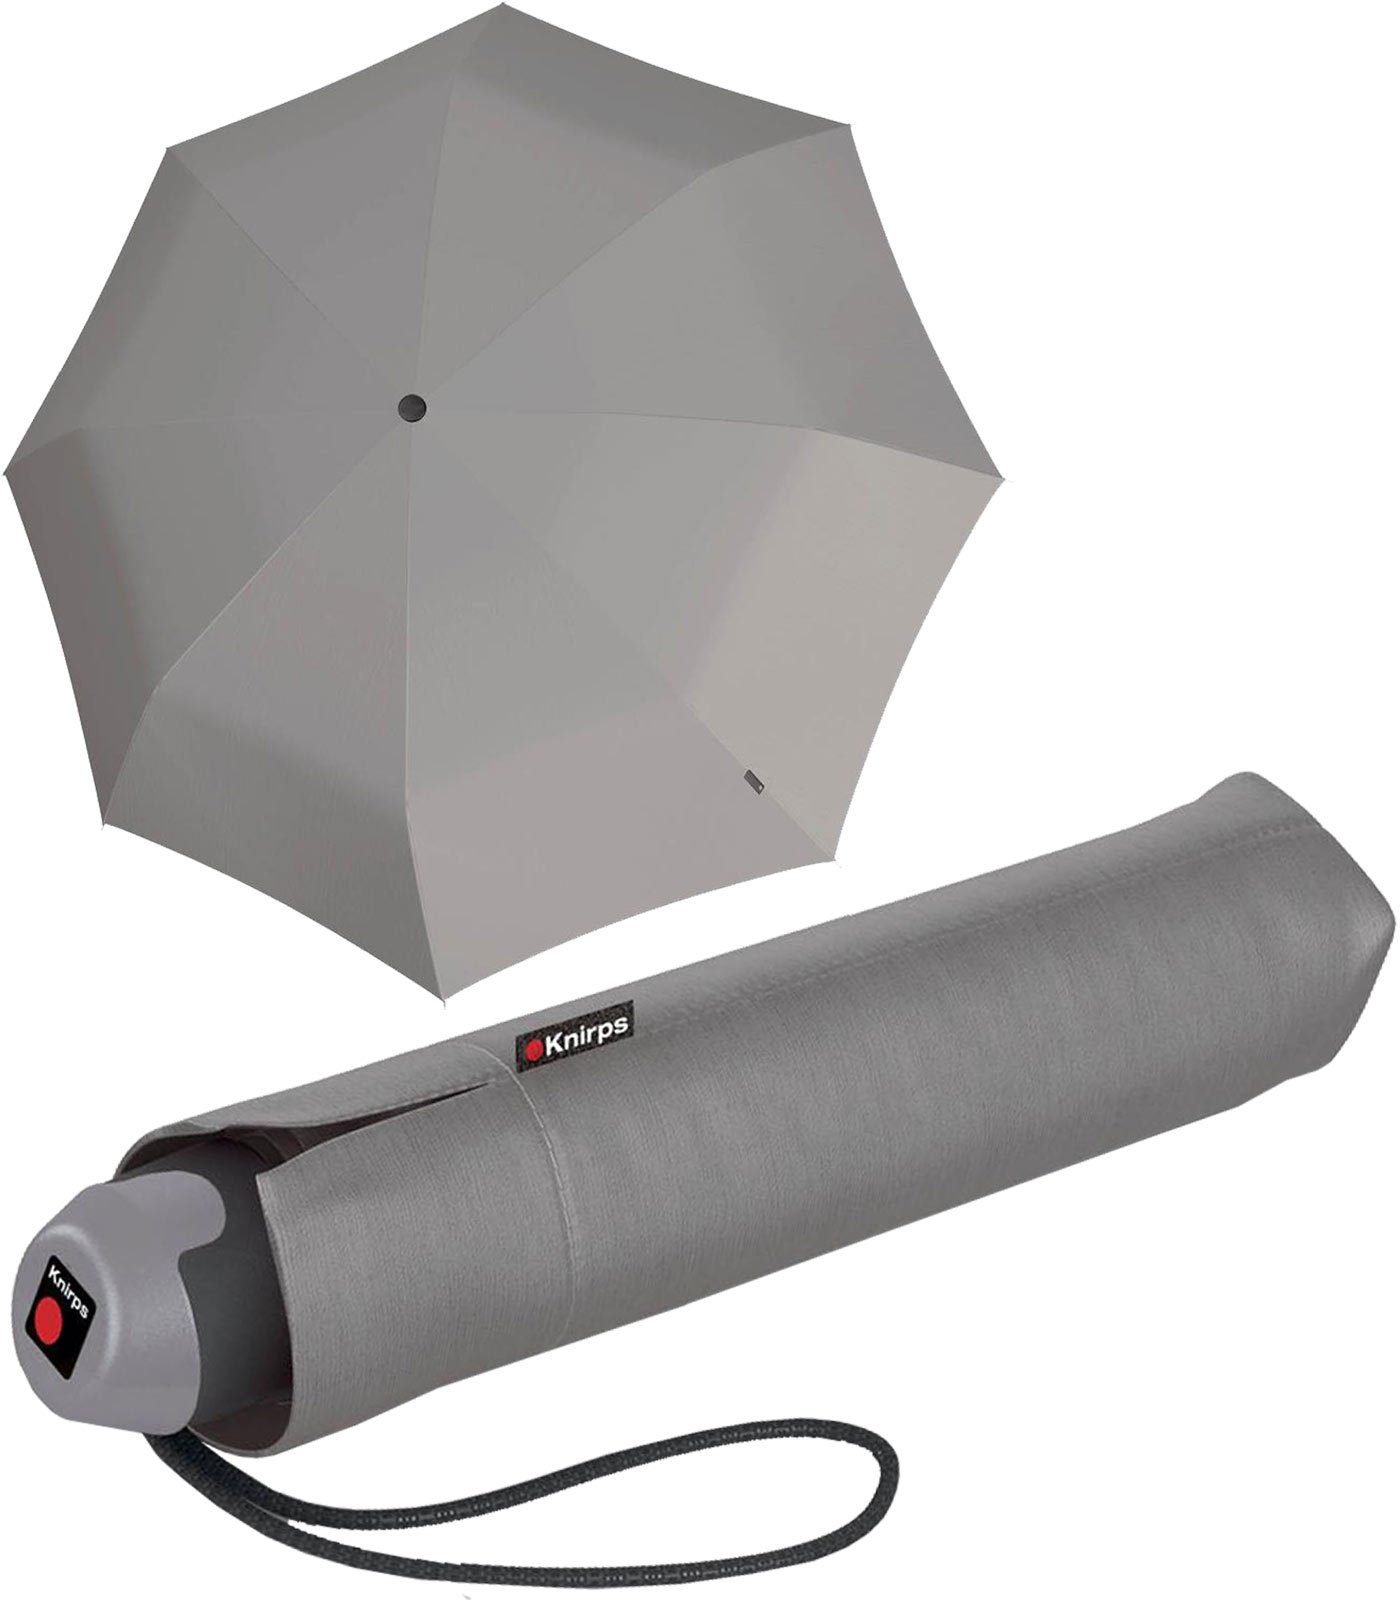 grey, grau leichter den mit Taschenschirm der Regenschirm Handöffner, für Knirps® Taschenregenschirm kleine Alltag E.051